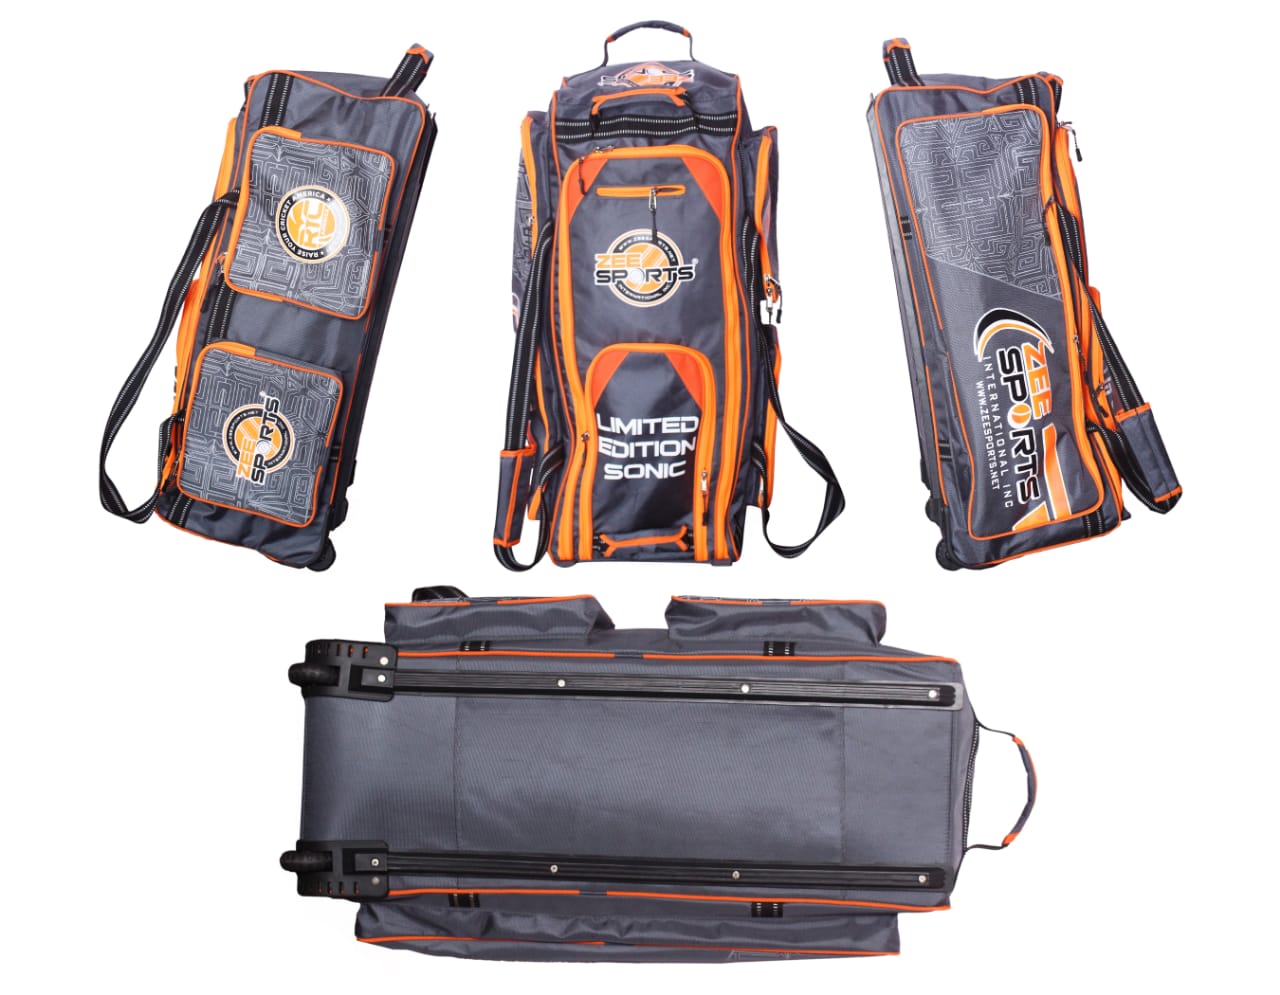 Zee Sports Kit Bag Sonic Wheelie